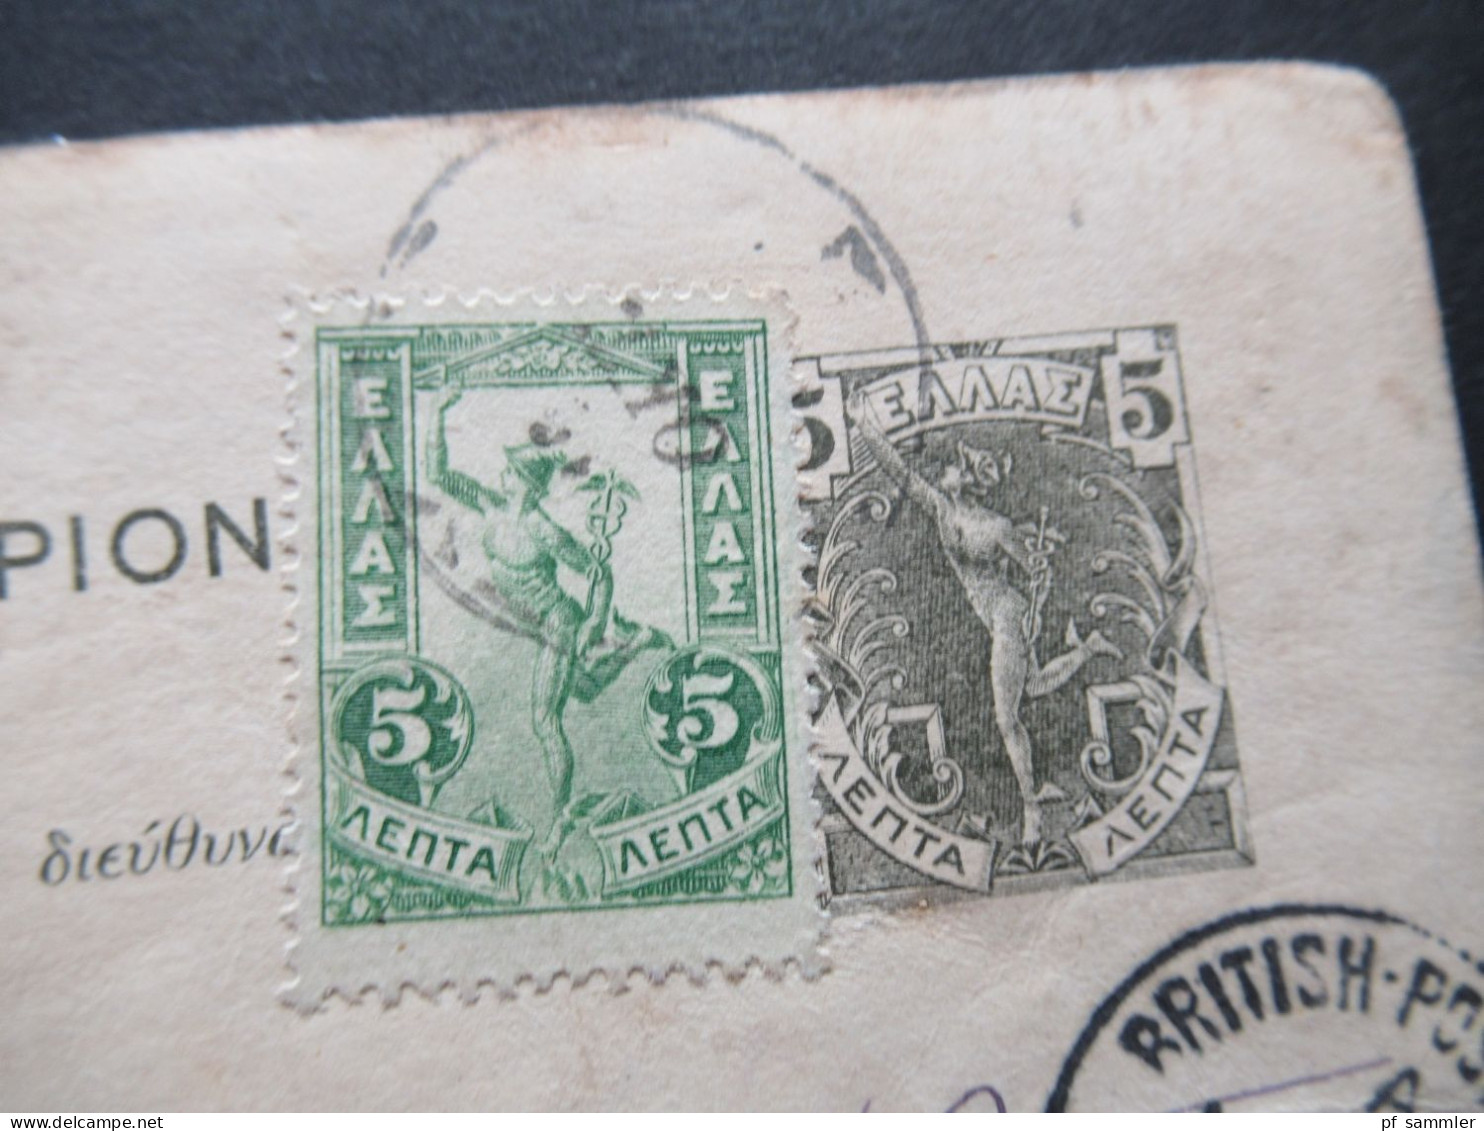 Griechenland 1905 Ganzsache Mit ZuF Nach Constantinople Mit Ank. K1 British Post Office Constantinople No 4 - Ganzsachen